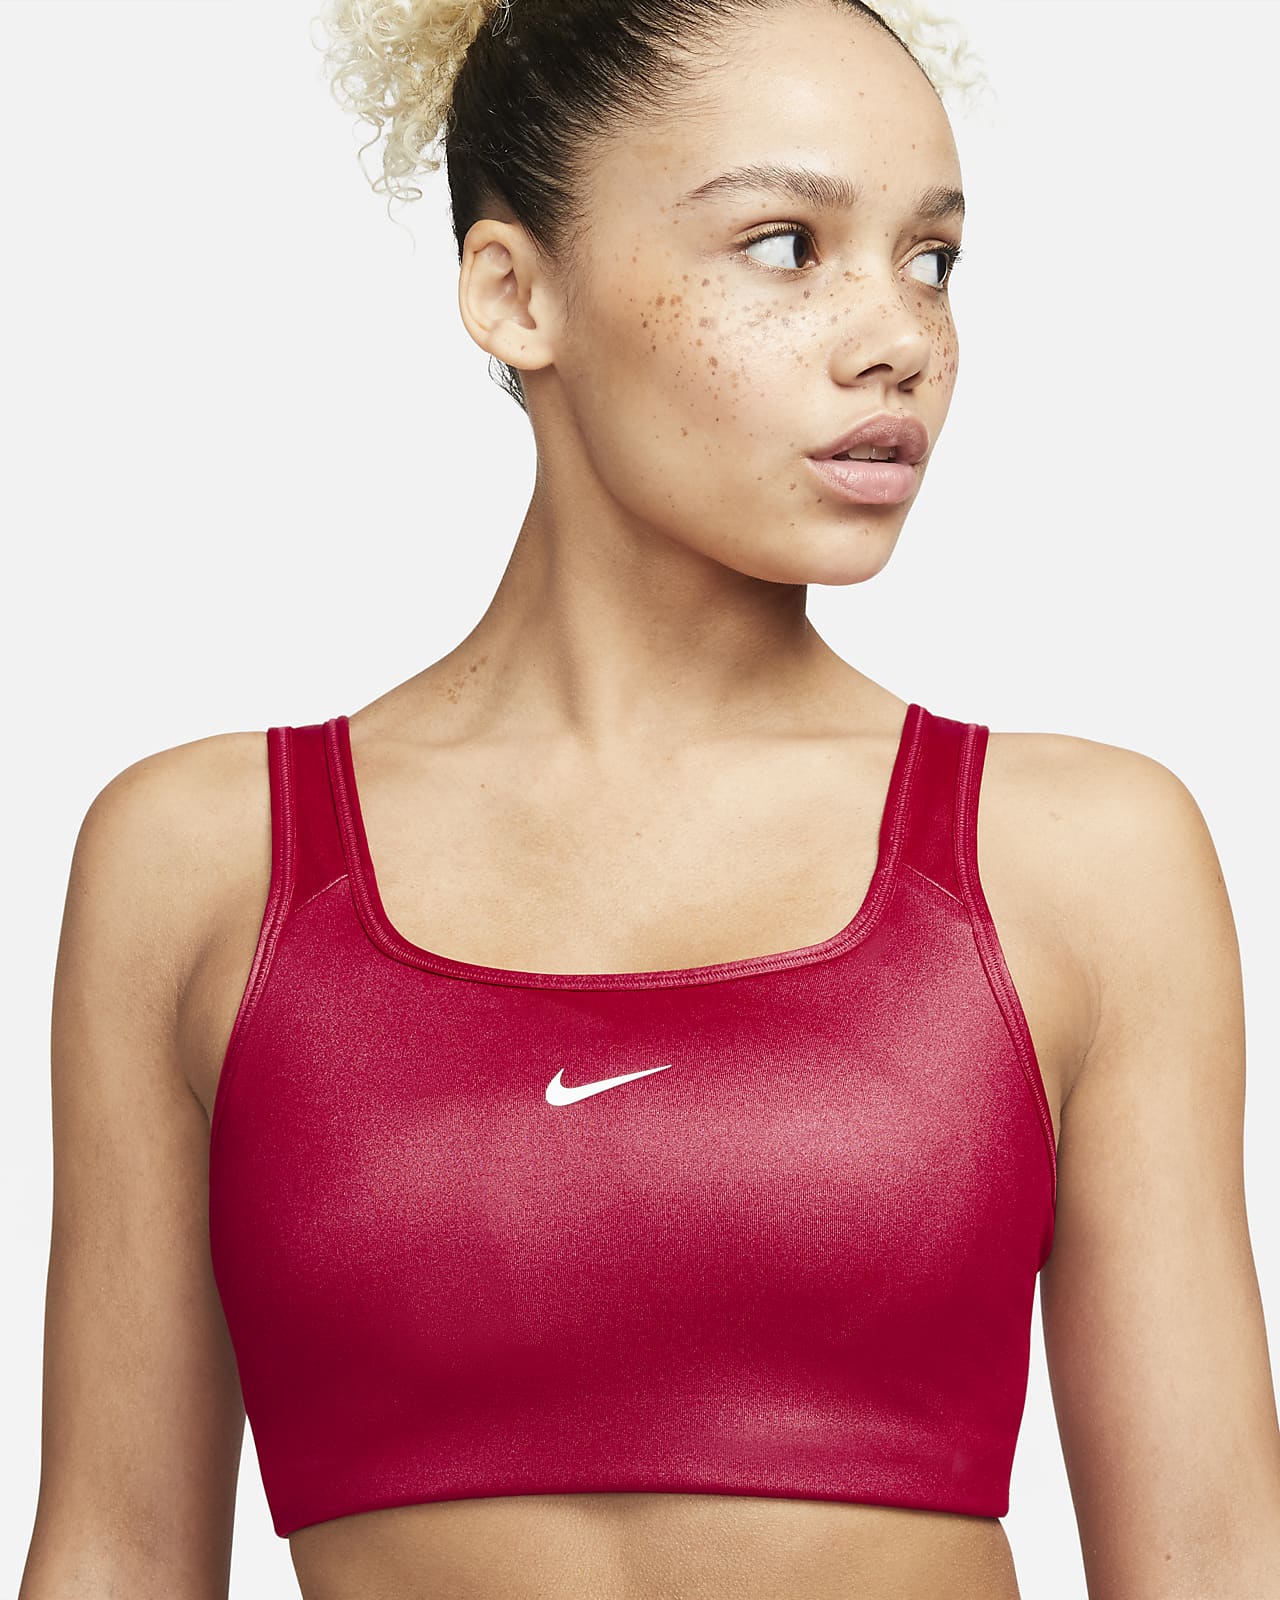 טופ וחולצת קרופ נייק לנשים Nike RED TOP - אדום יין